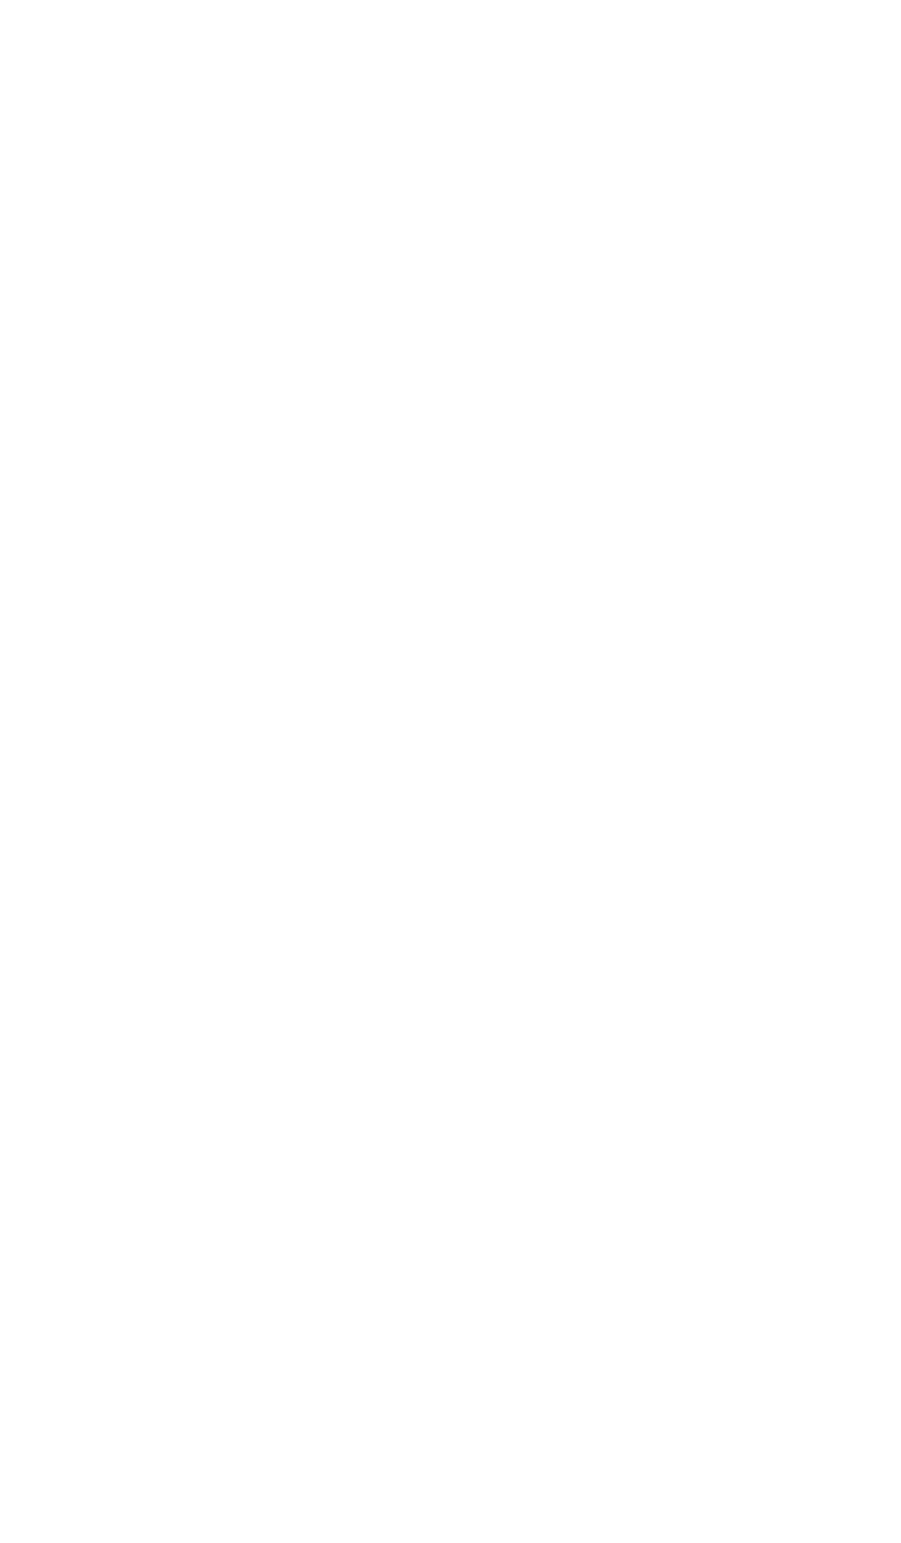 Industries Qatar Logo groß für dunkle Hintergründe (transparentes PNG)